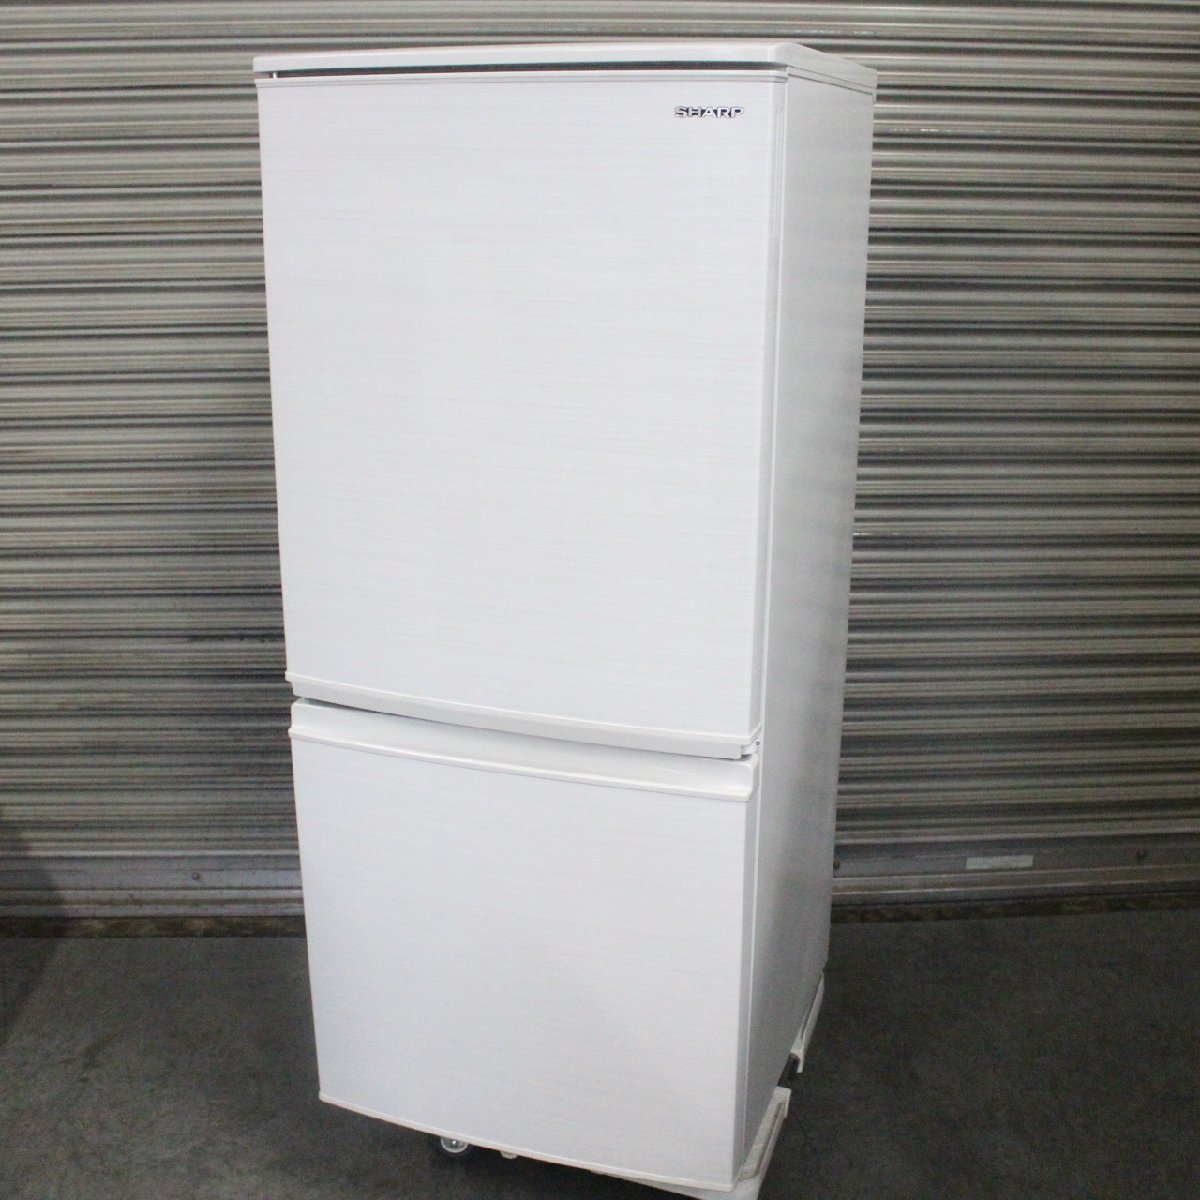 東京都狛江市にて シャープ 2ドアノンフロン冷凍冷蔵庫 SJ-D14F 2020年製 を出張買取させて頂きました。